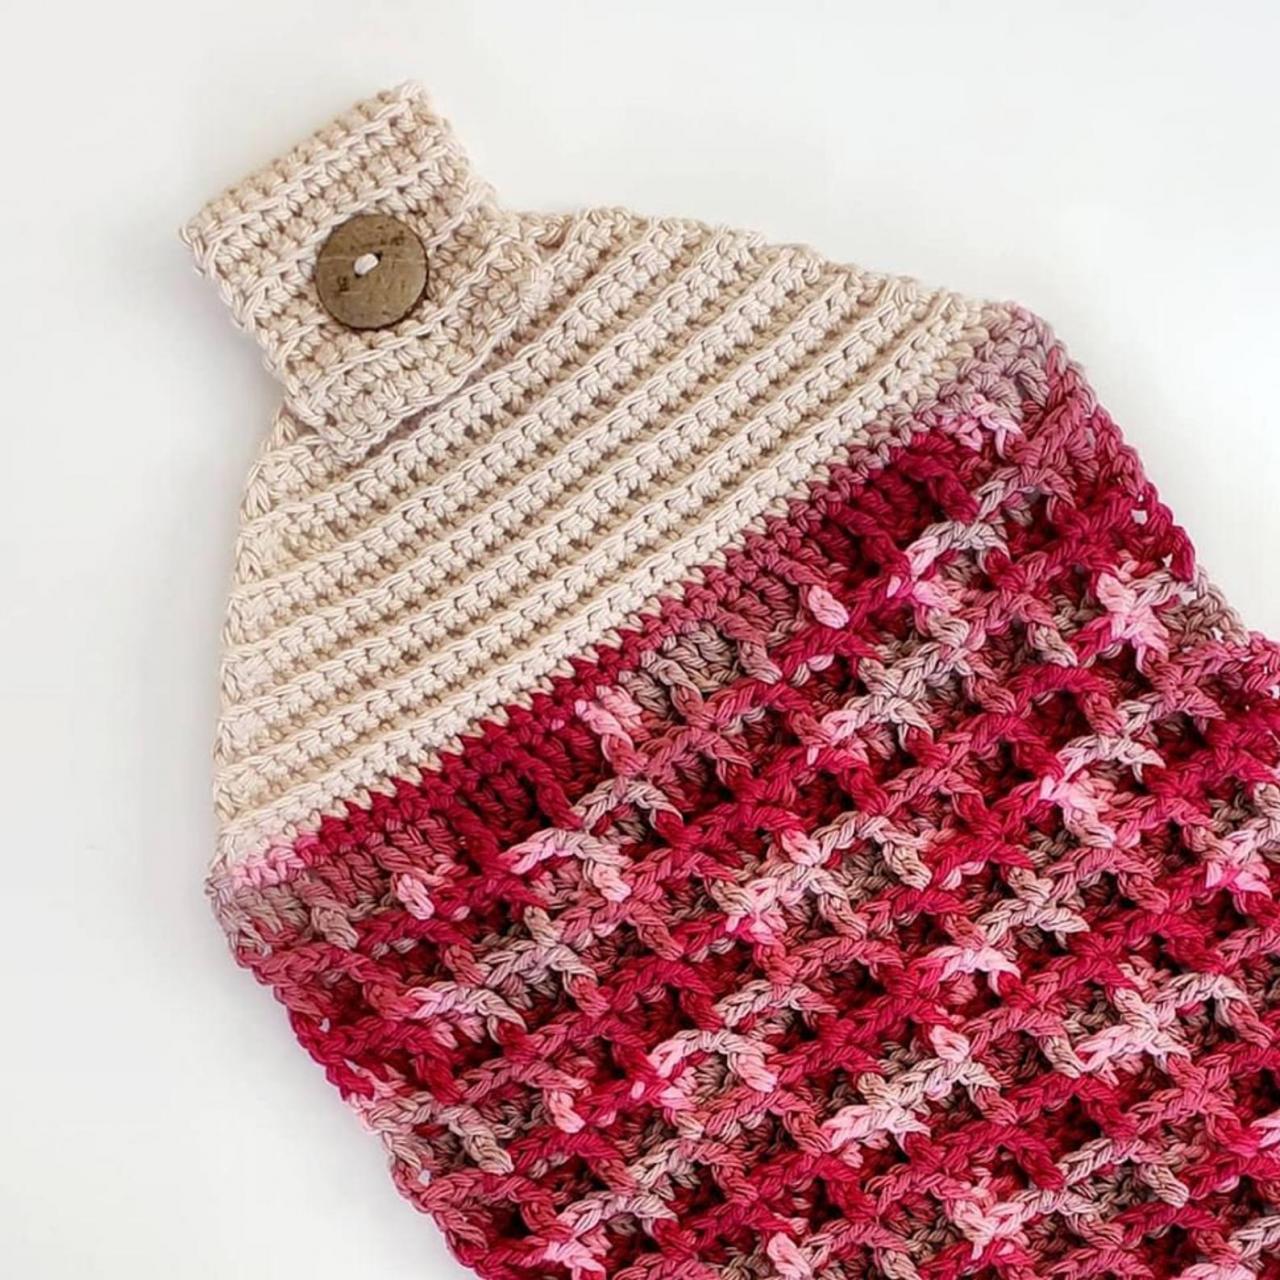 Birch Hand Towel Crochet Pattern - Digital Download - Crochet Pattern - Pdf Download